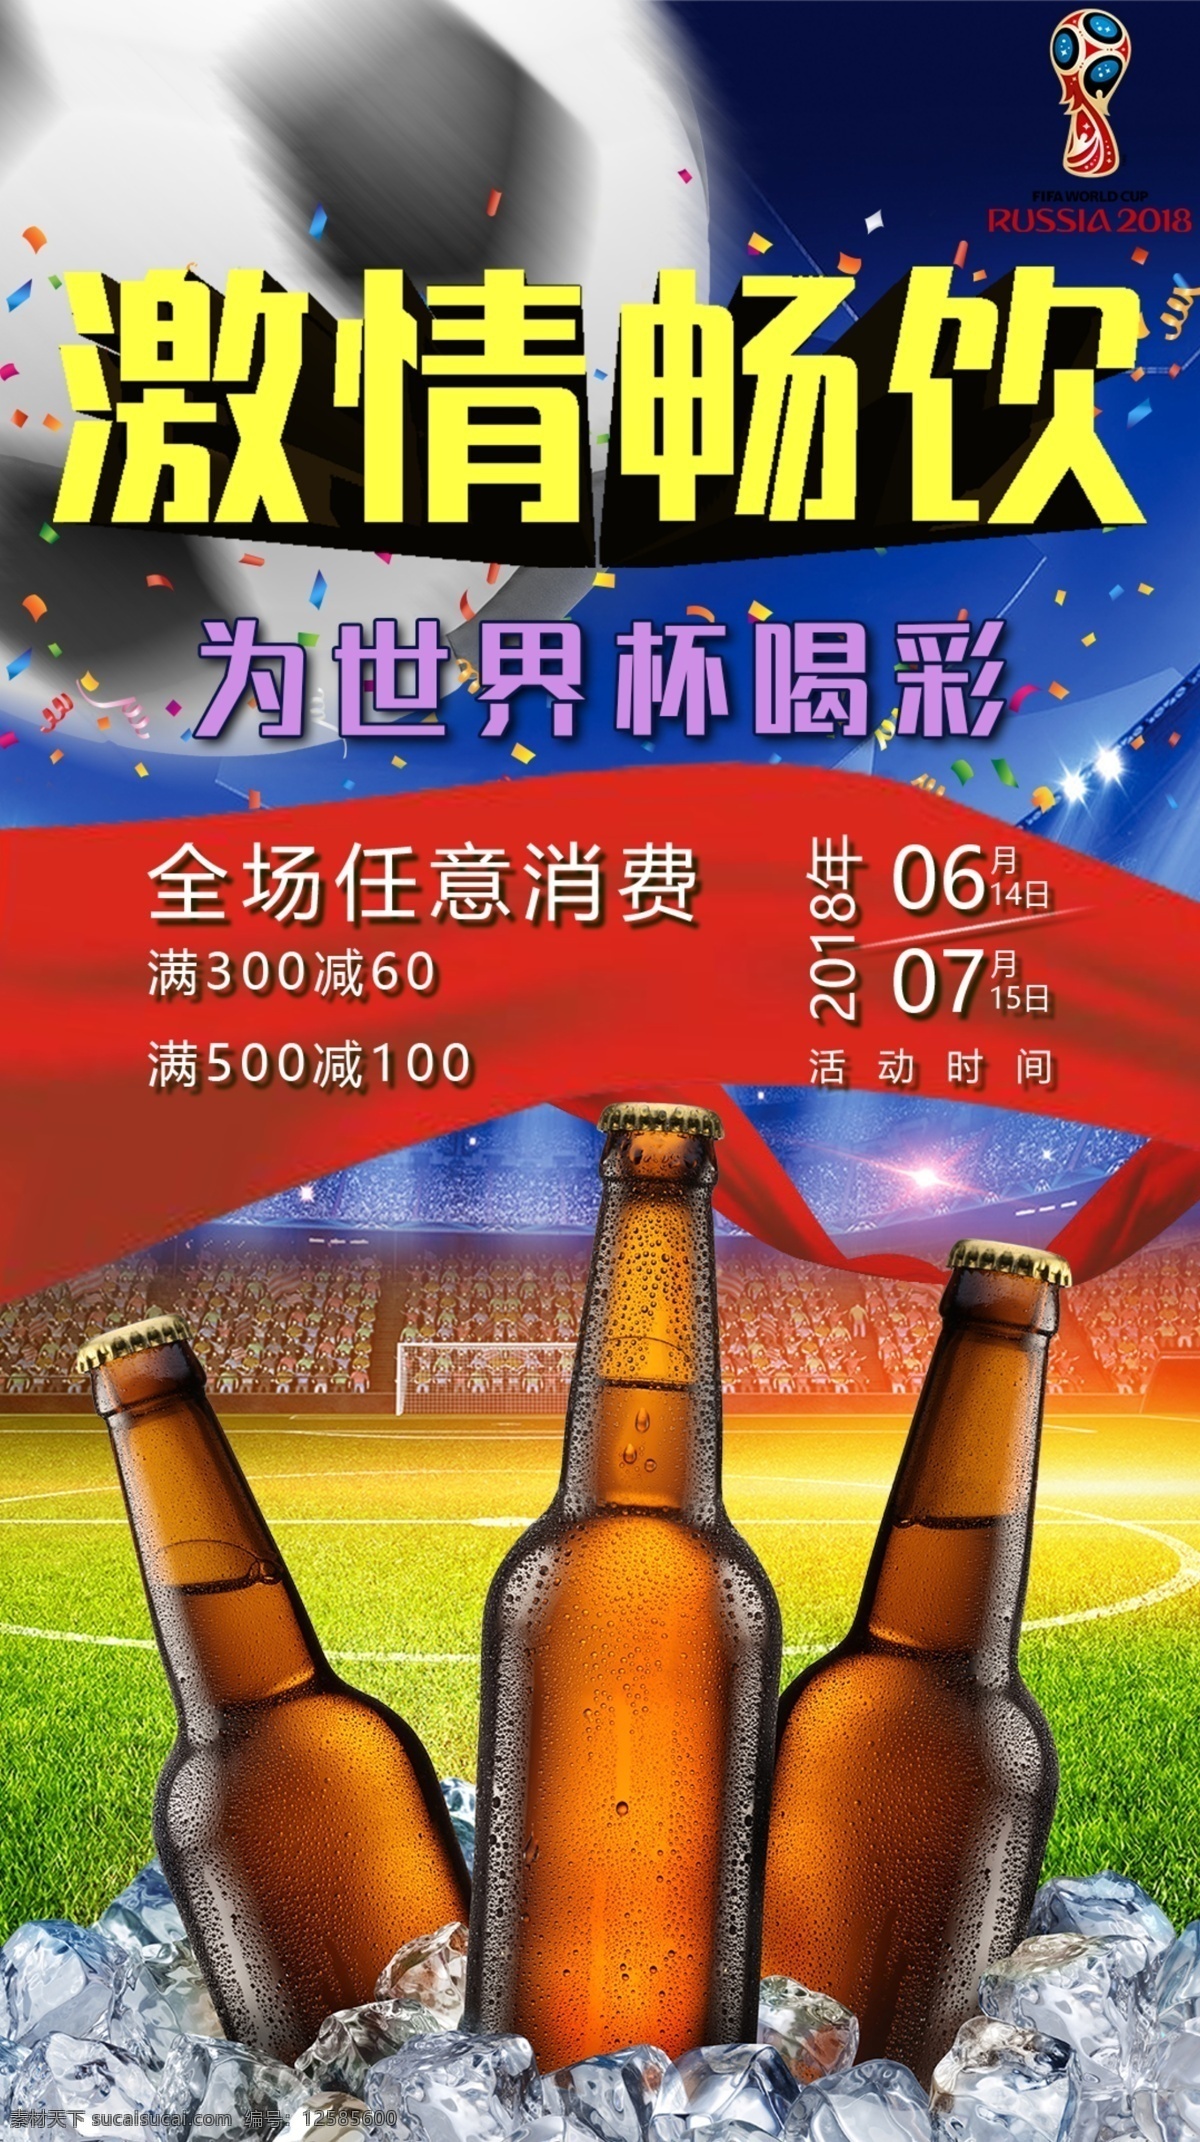 激情 畅饮 世界杯 喝彩 啤酒 促销 海报 展板 促销海报 足球 体育 比赛